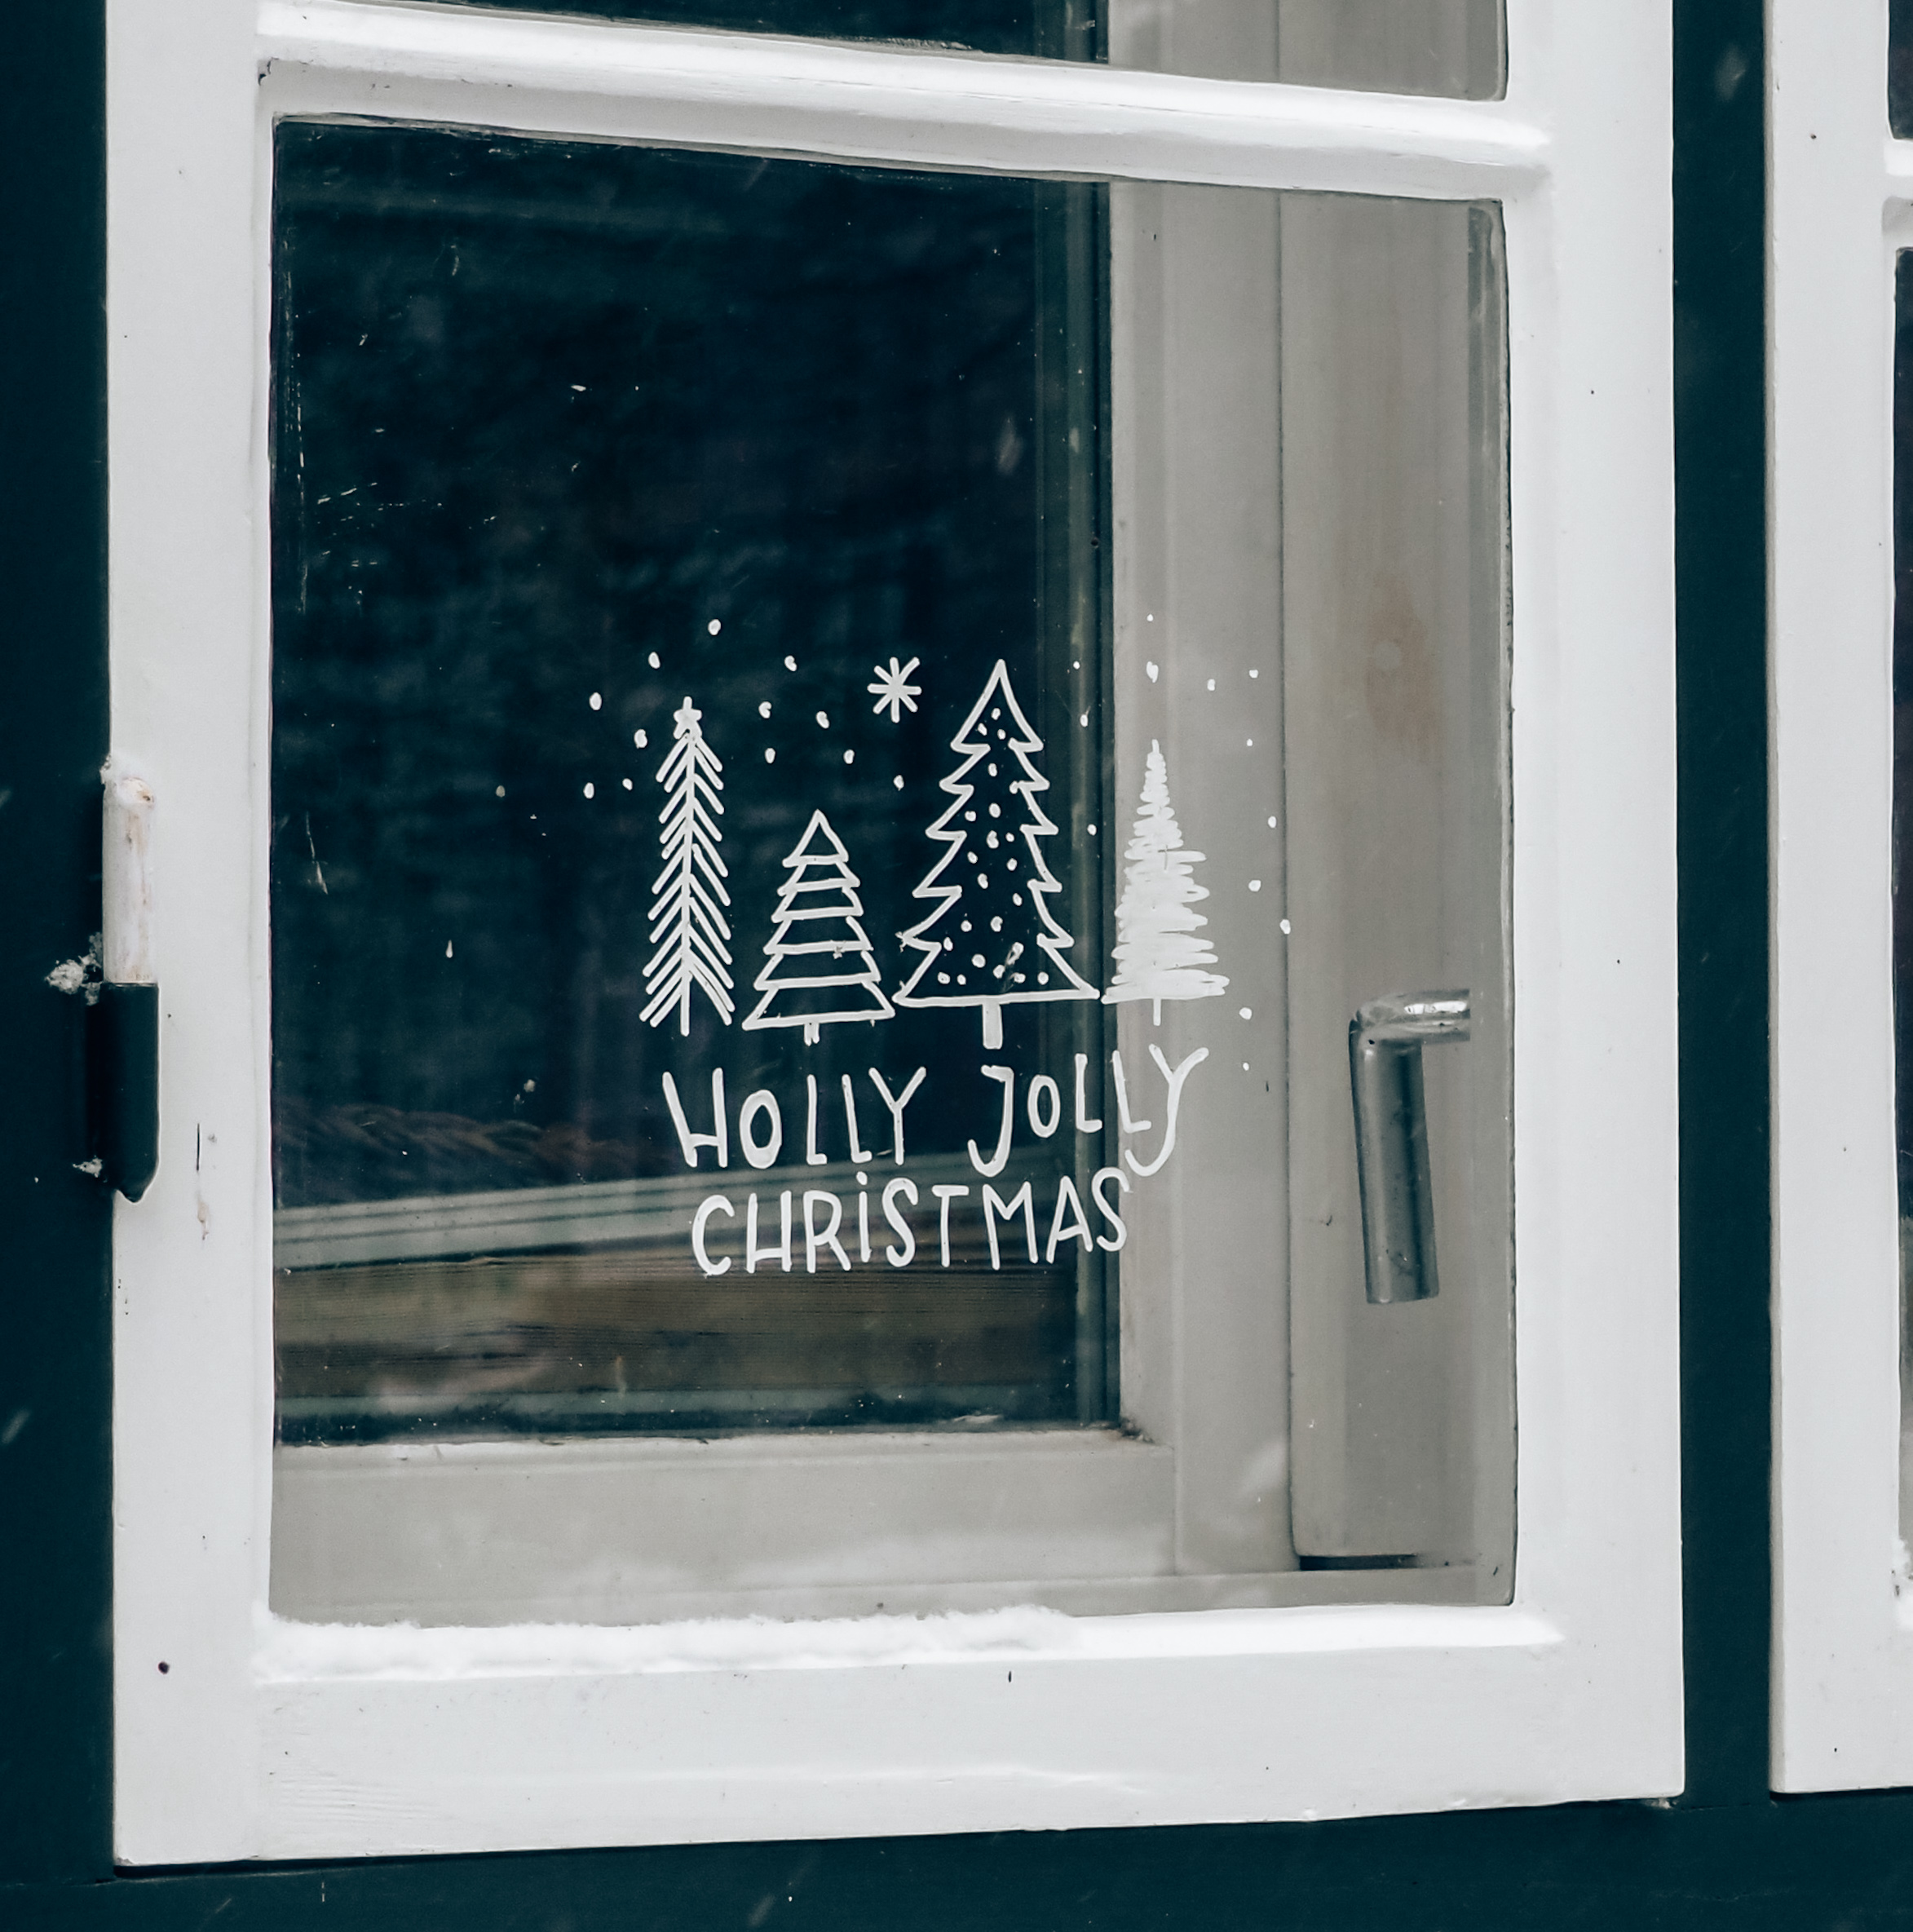 Fünf zauberhafte Fensterbilder mit Kreidemarkern für Weihnachten